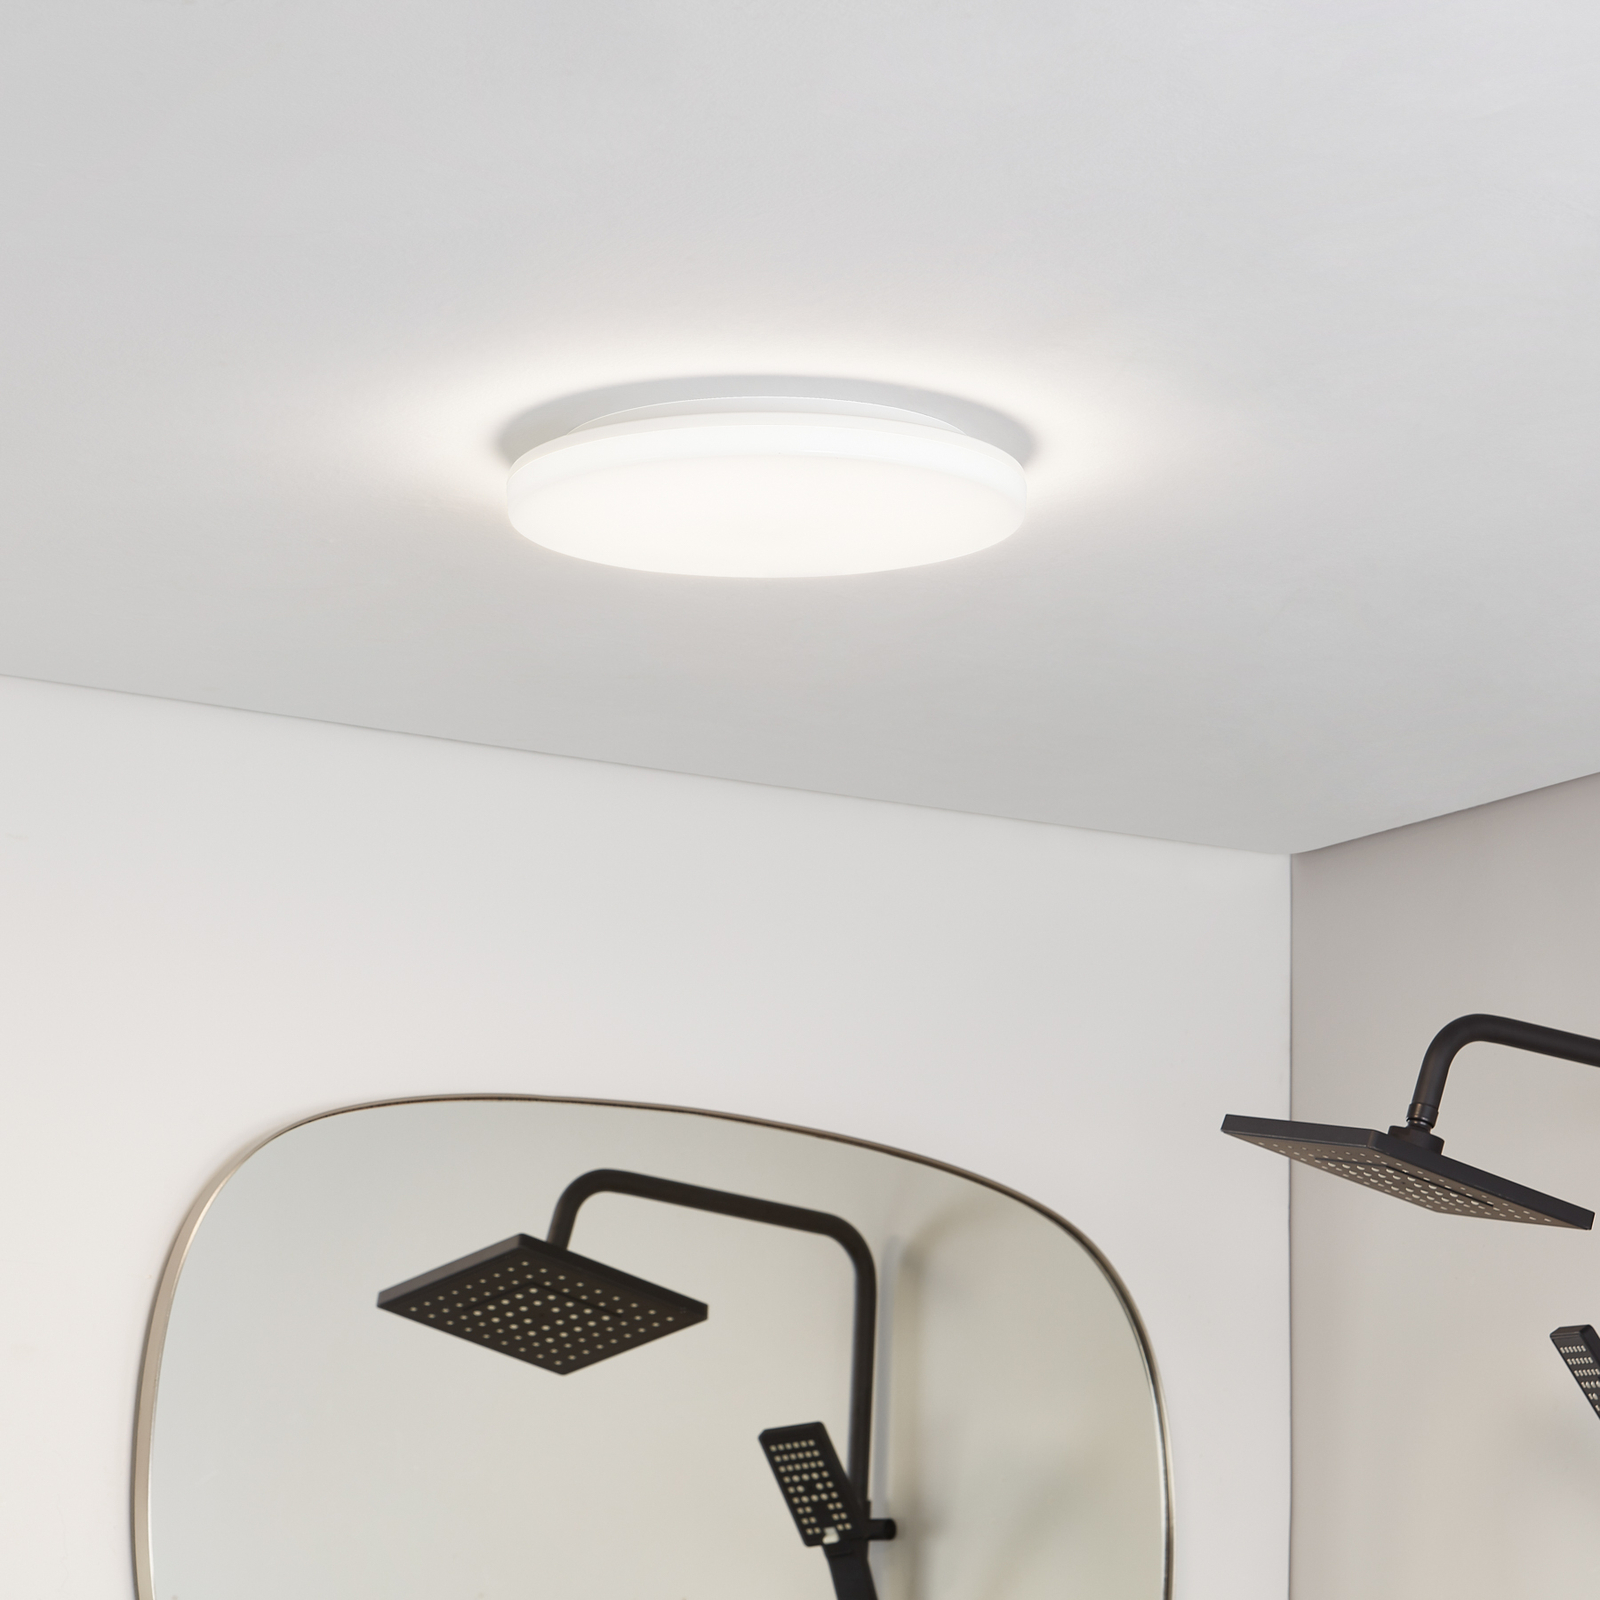 Φωτιστικό οροφής Prios Artin LED, στρογγυλό, 33 cm